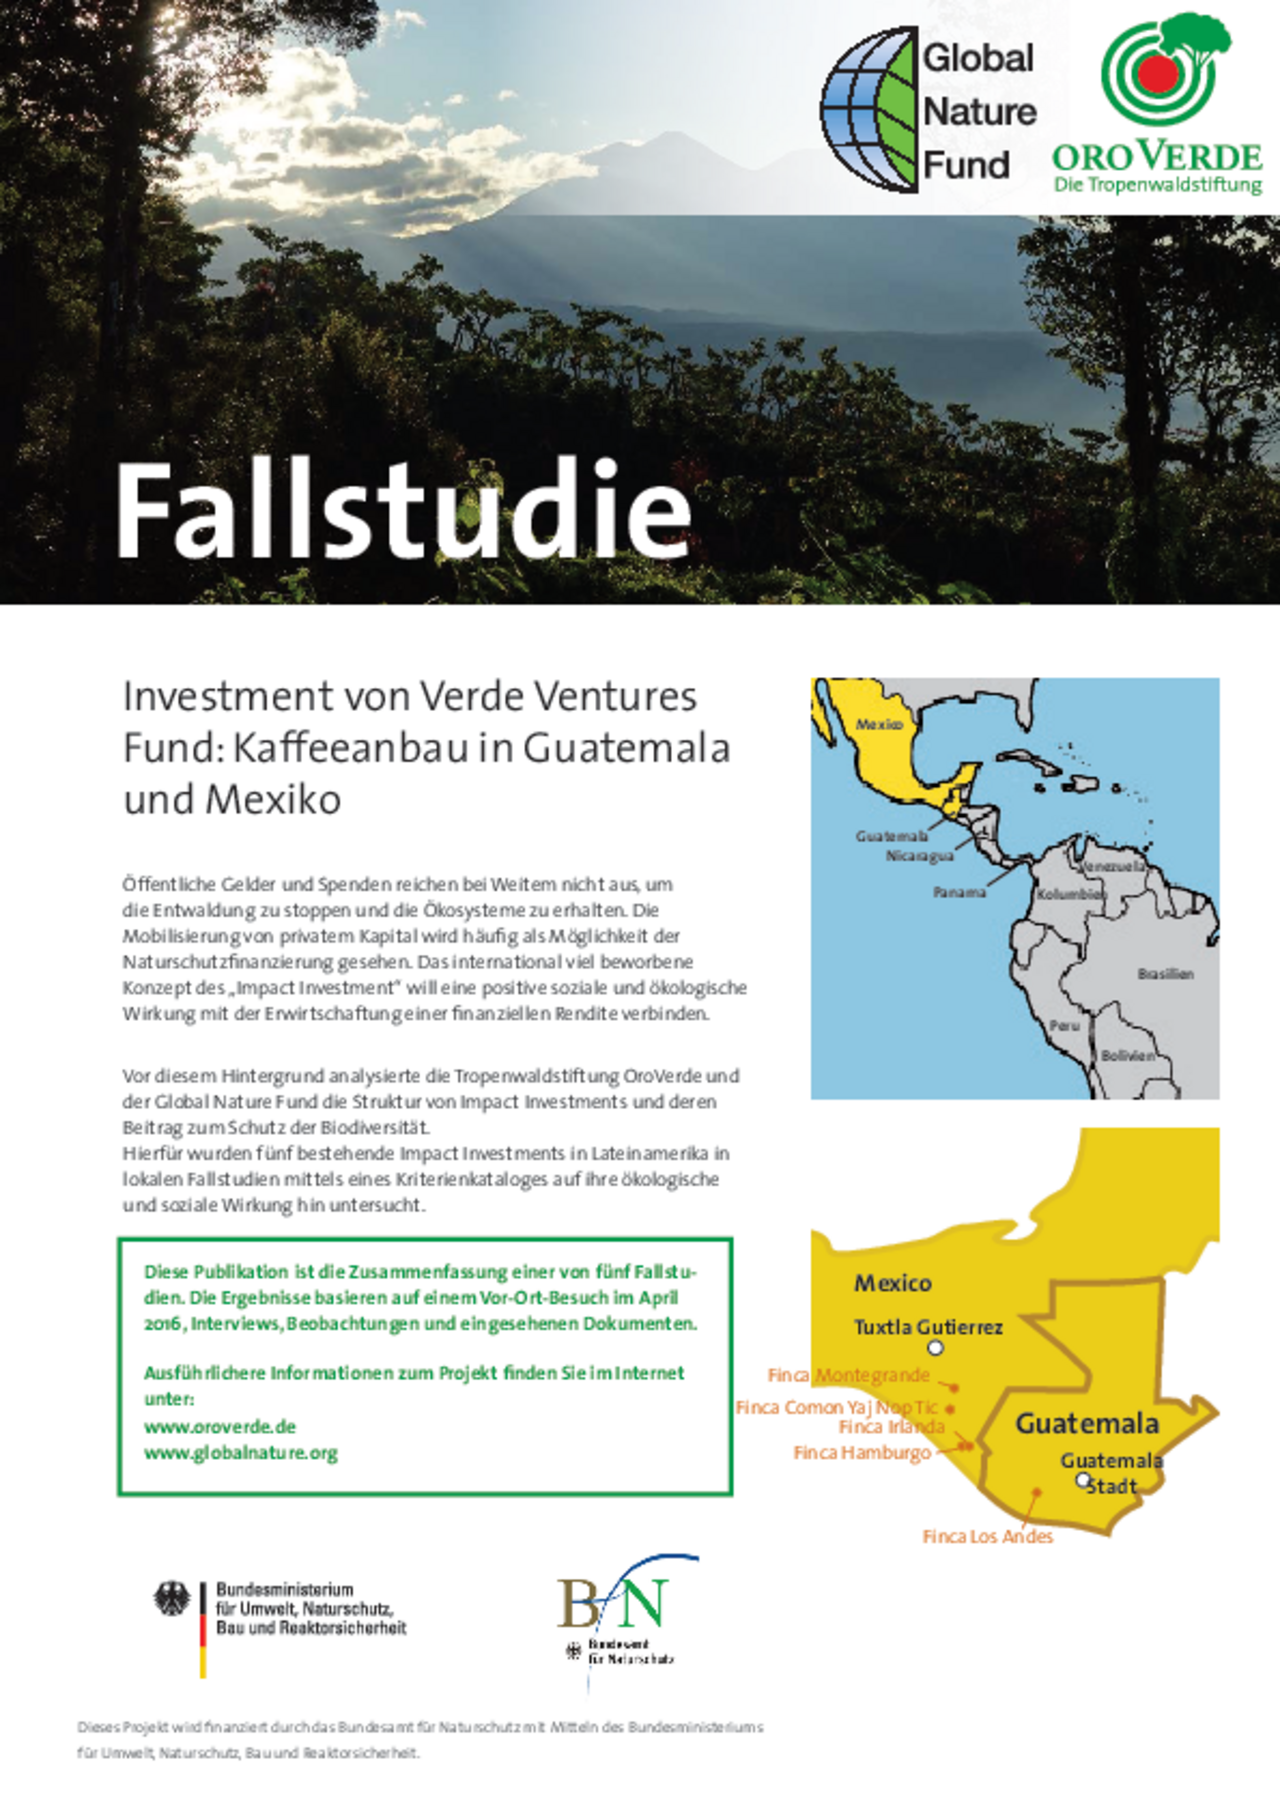 Impact Investment: Fallstudie 3